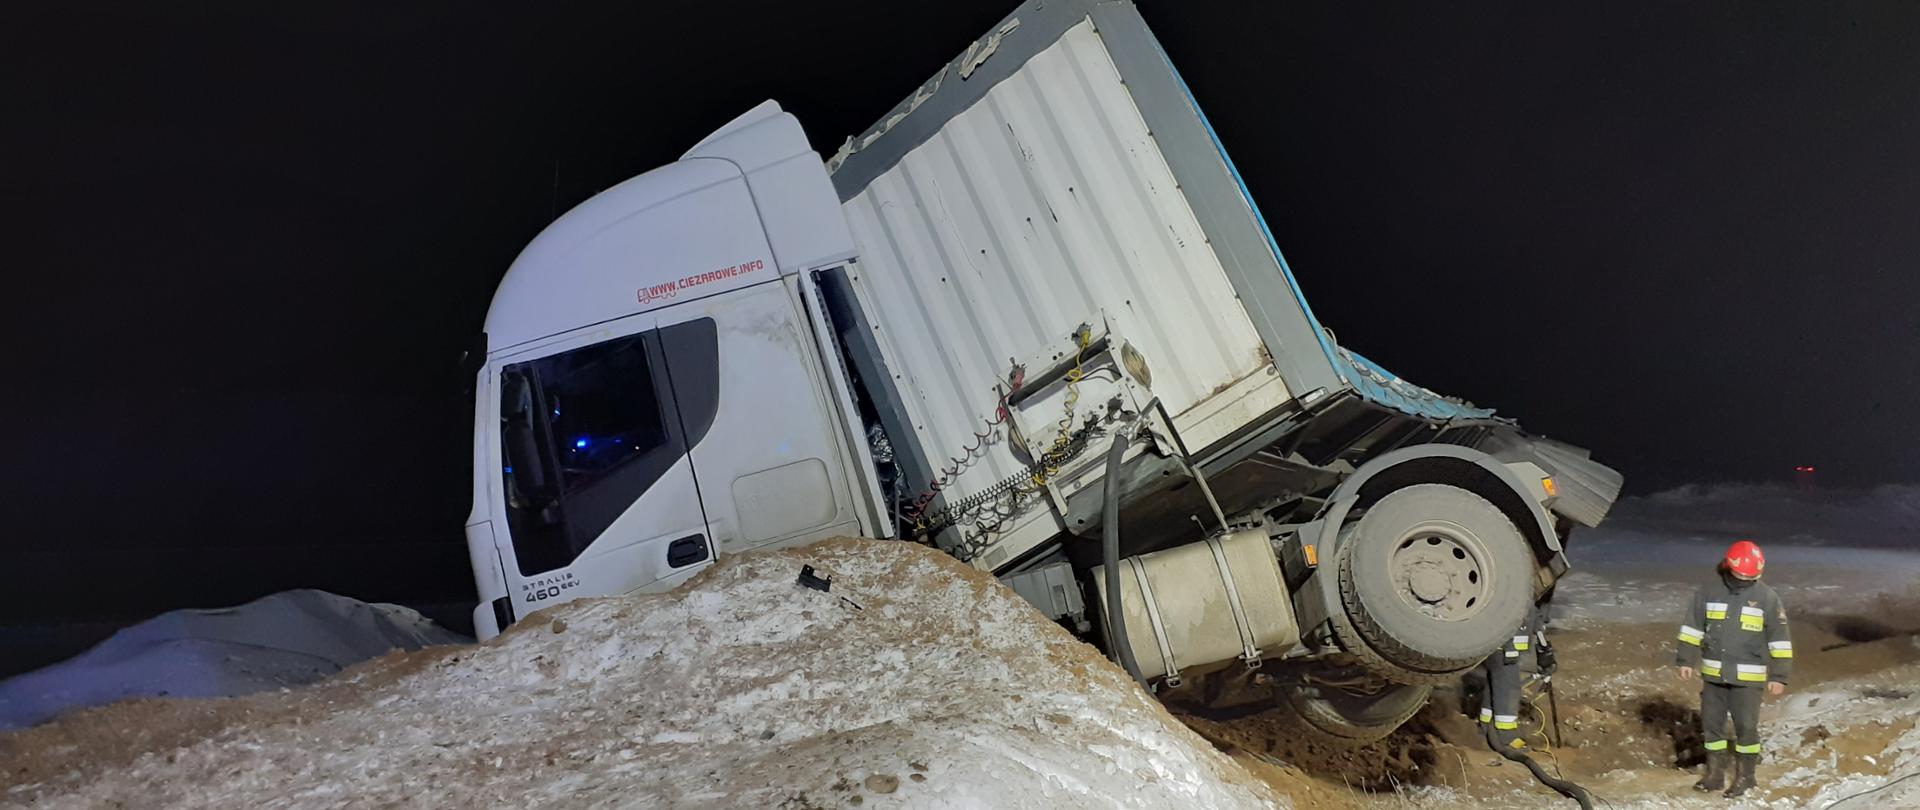 Na zdjęciu widać samochód ciężarowy z pochyloną naczepą. Przed samochodem osobowym widoczna jest hałda piasku pokryta śniegiem. W prawej części zdjęcia widać strażaków prowadzących działania ratownicze.